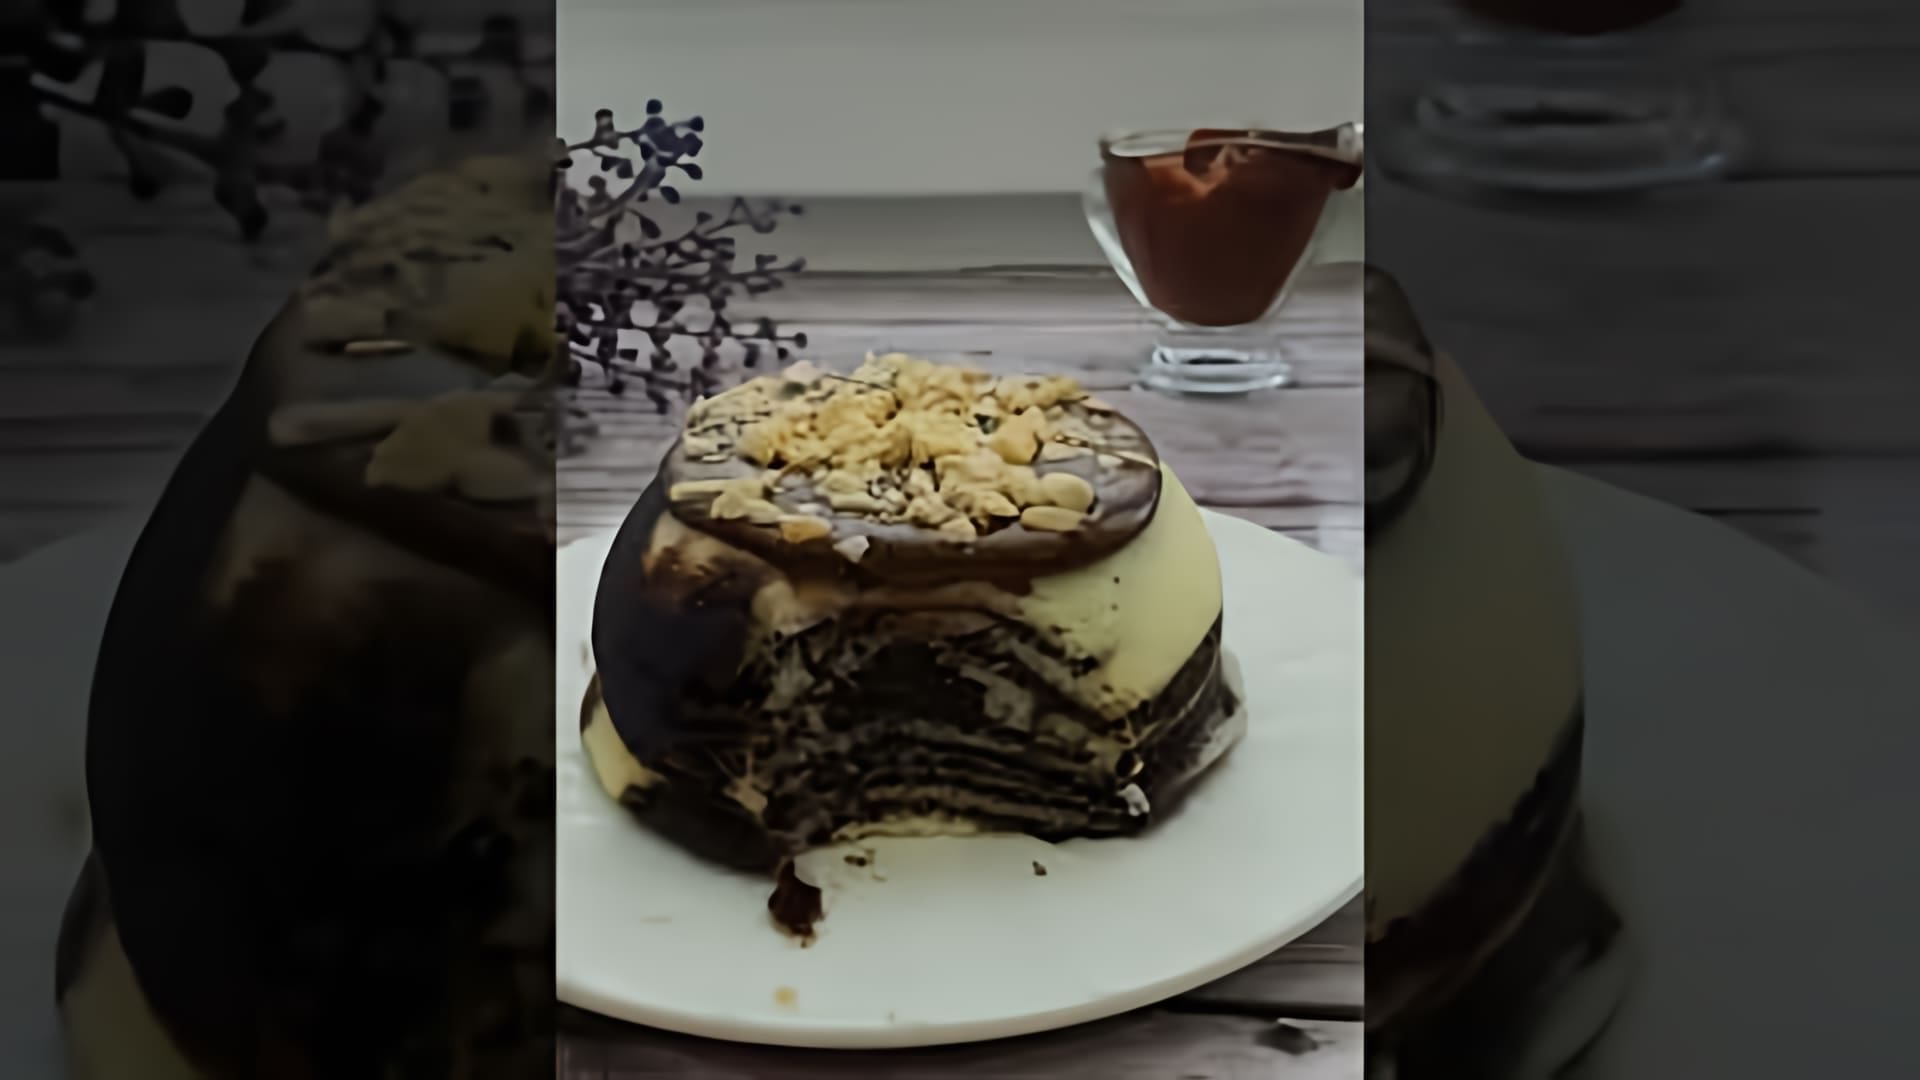 В этом видео демонстрируется рецепт приготовления низкокалорийного кекса "ЗЕБРА" без глютена и сахара